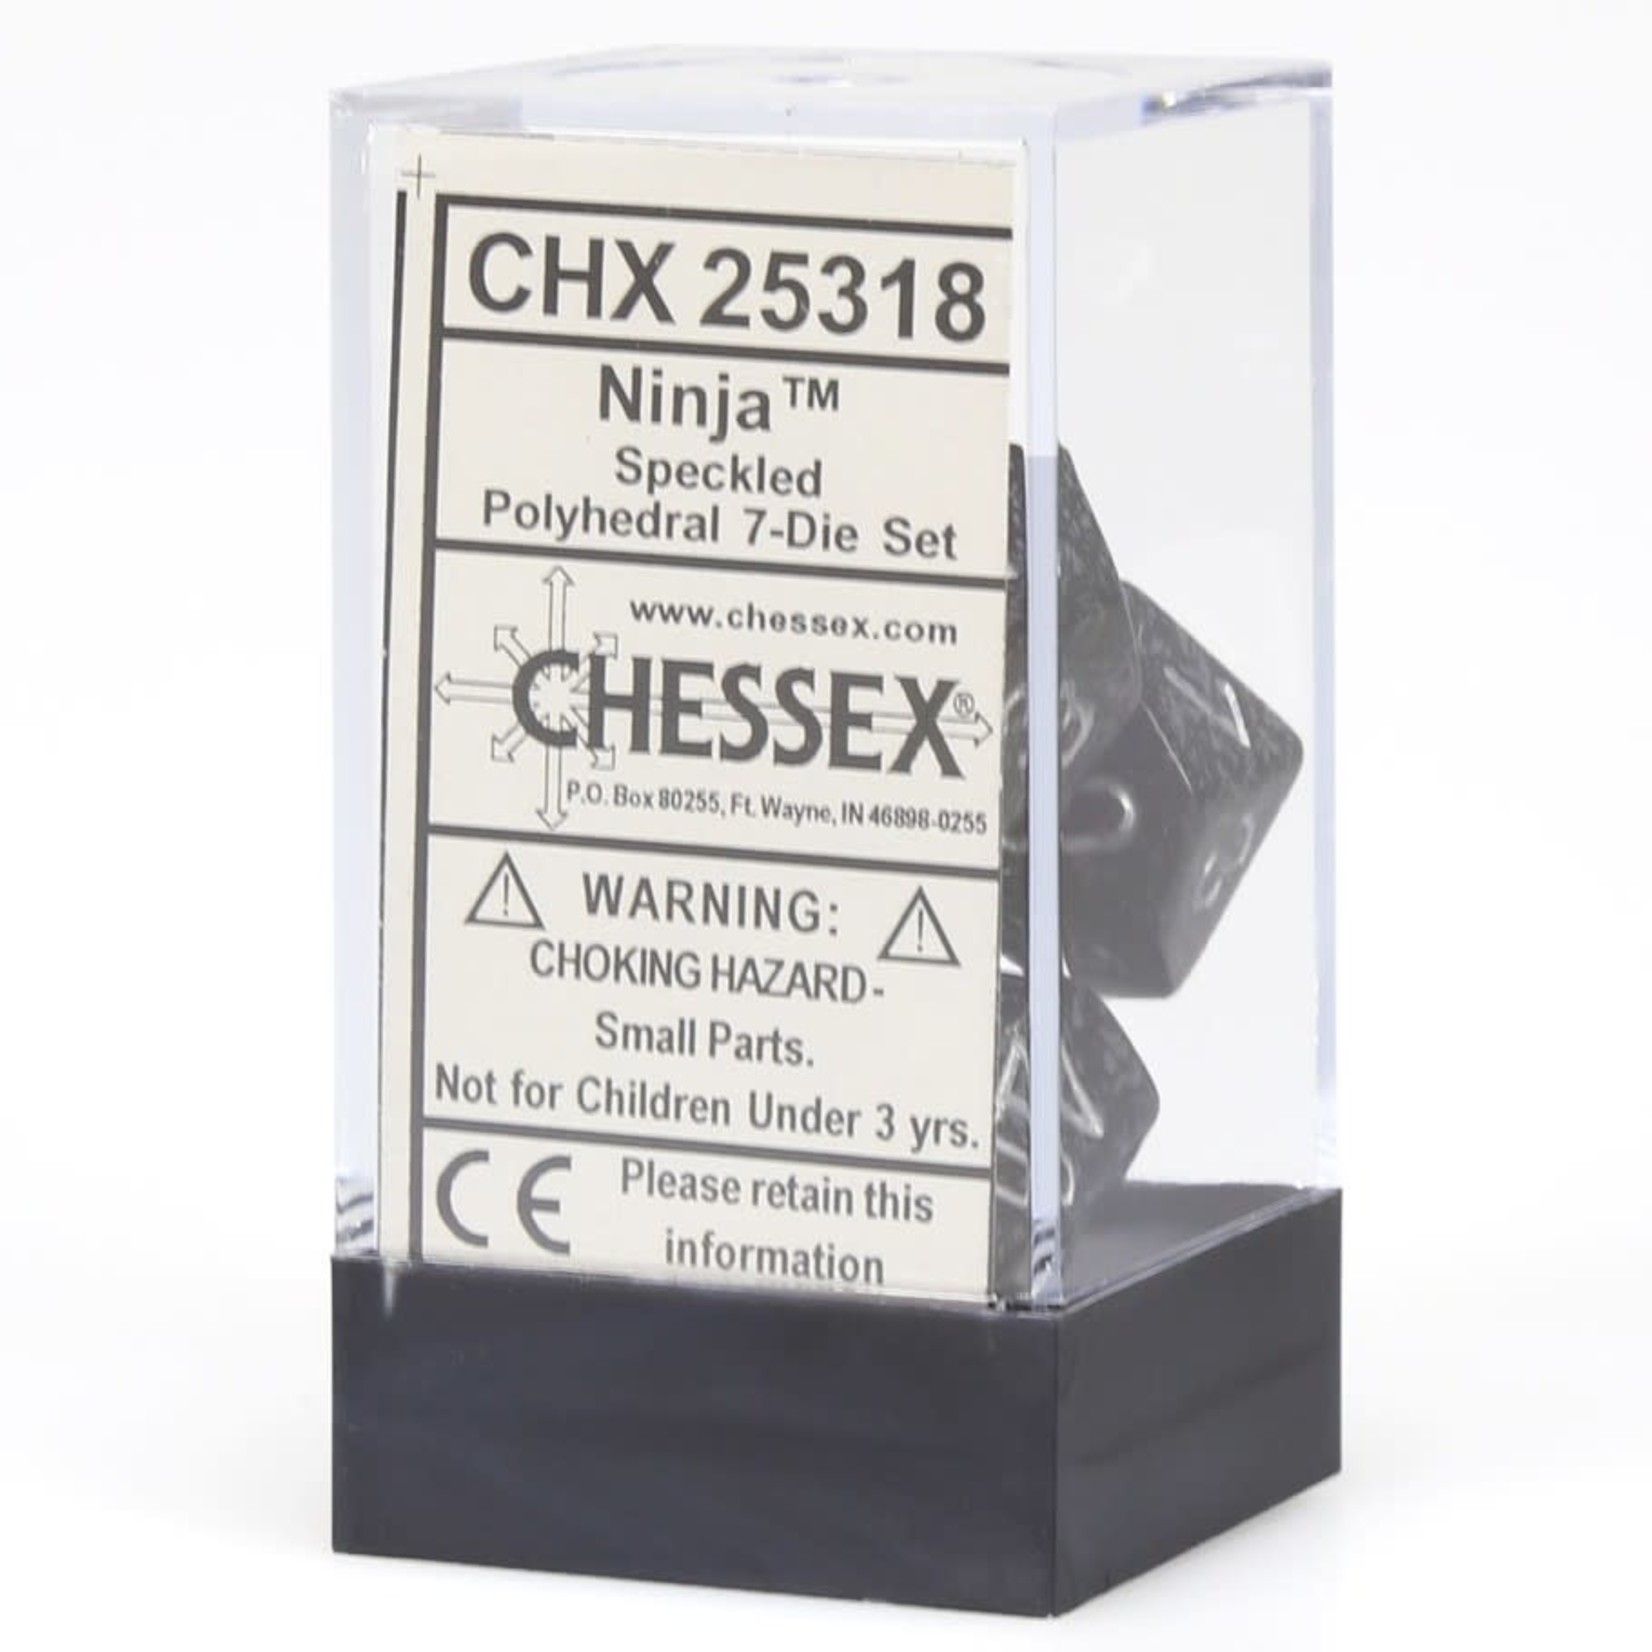 Chessex Speckled Polyhedral 7-Die Set: Ninja